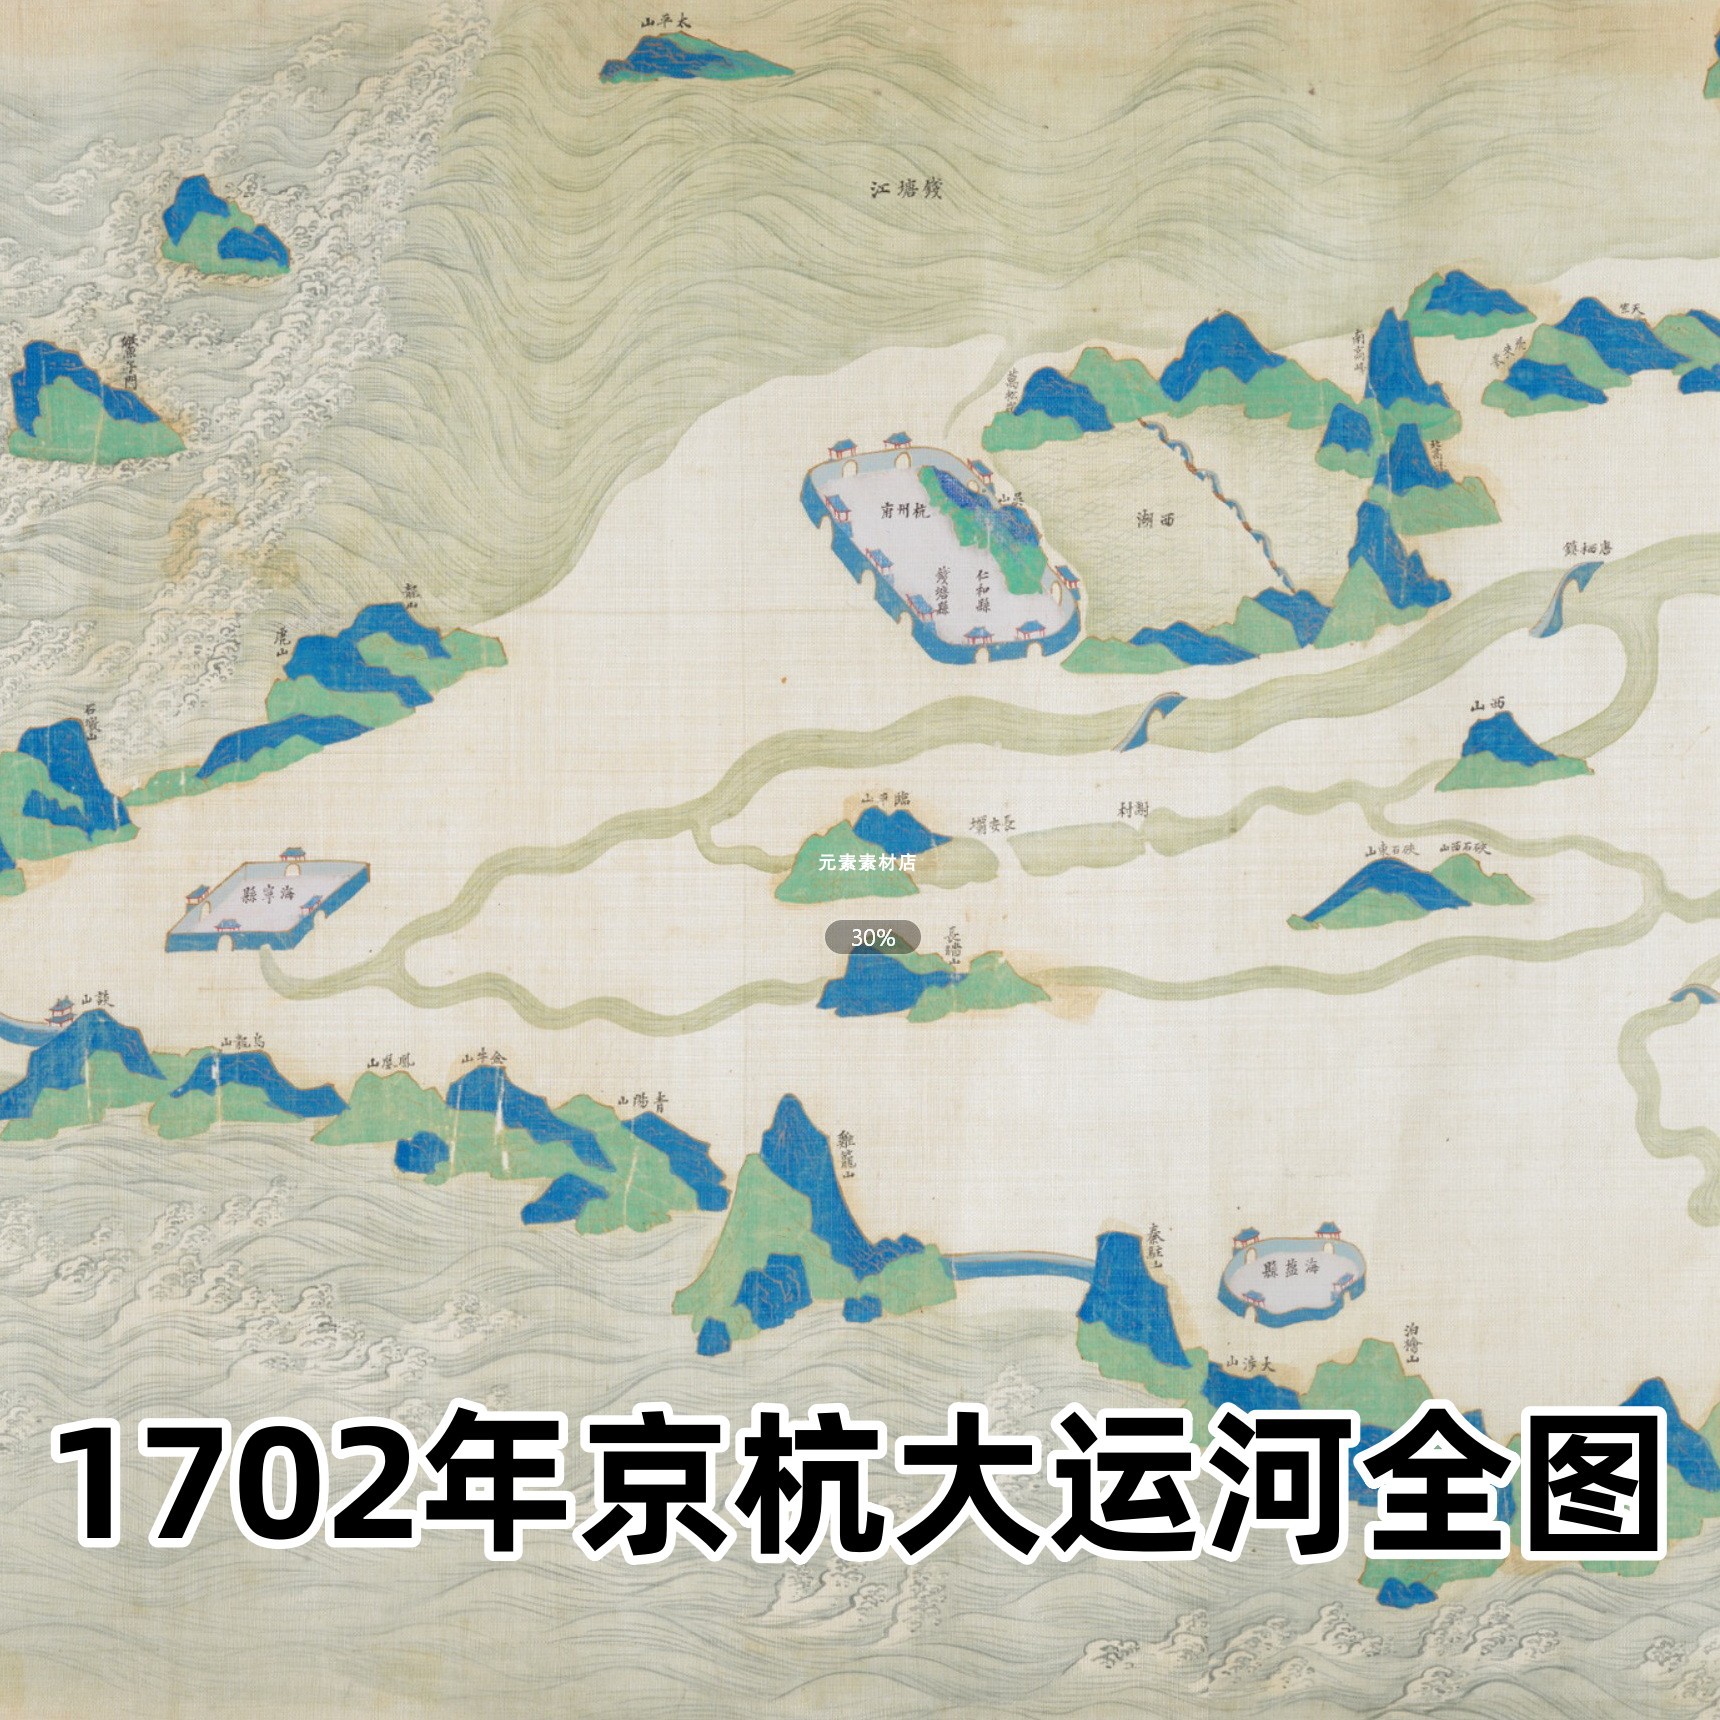 1702年京杭大运河全图 清代高清电子版老地图历史参考素材JPG格式